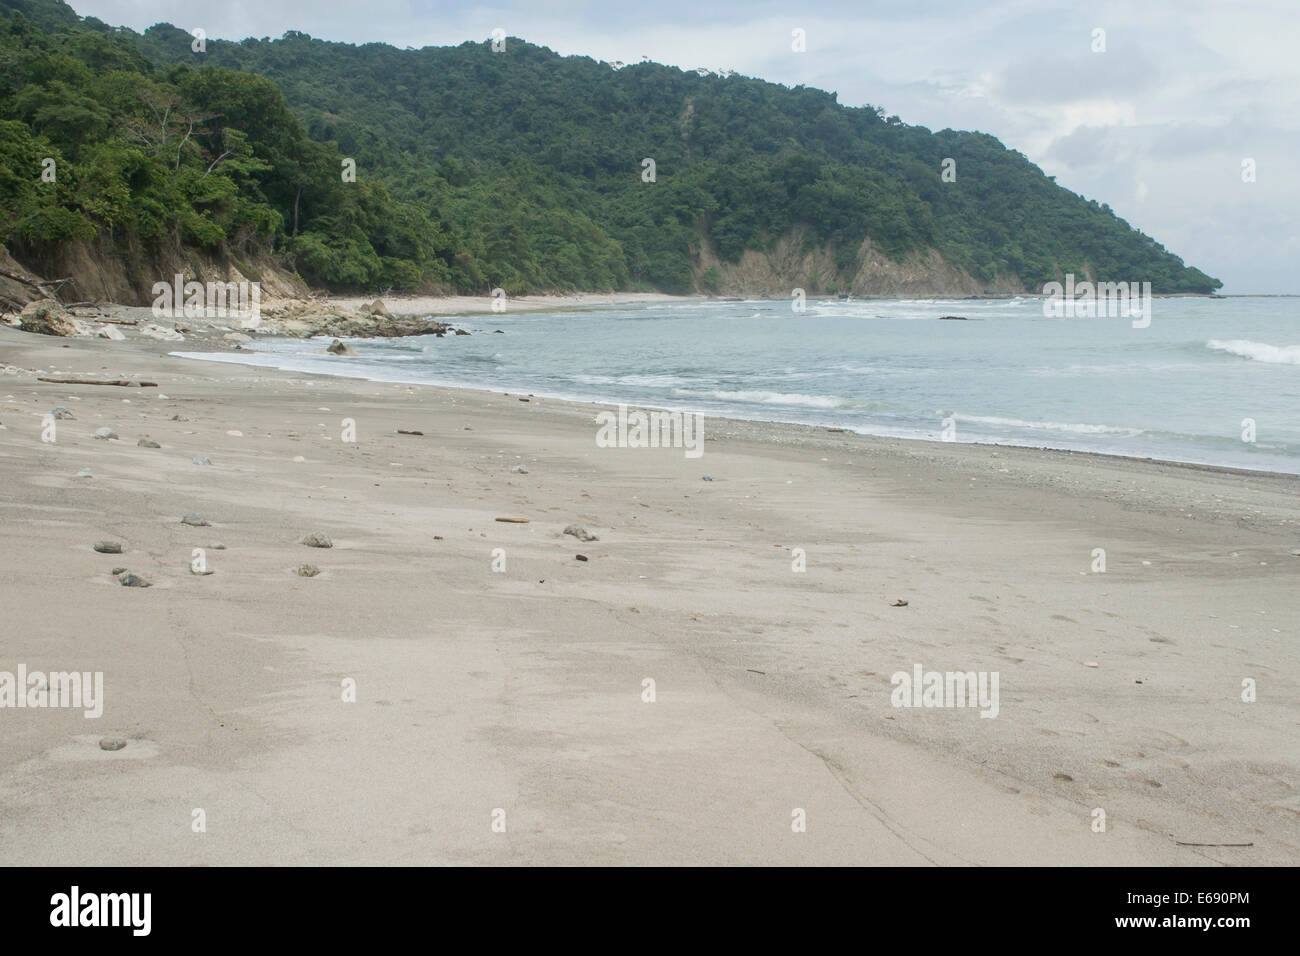 Plage tropicale à la réserve naturelle de Cabo Blanco Absolute, le Costa Rica. Banque D'Images